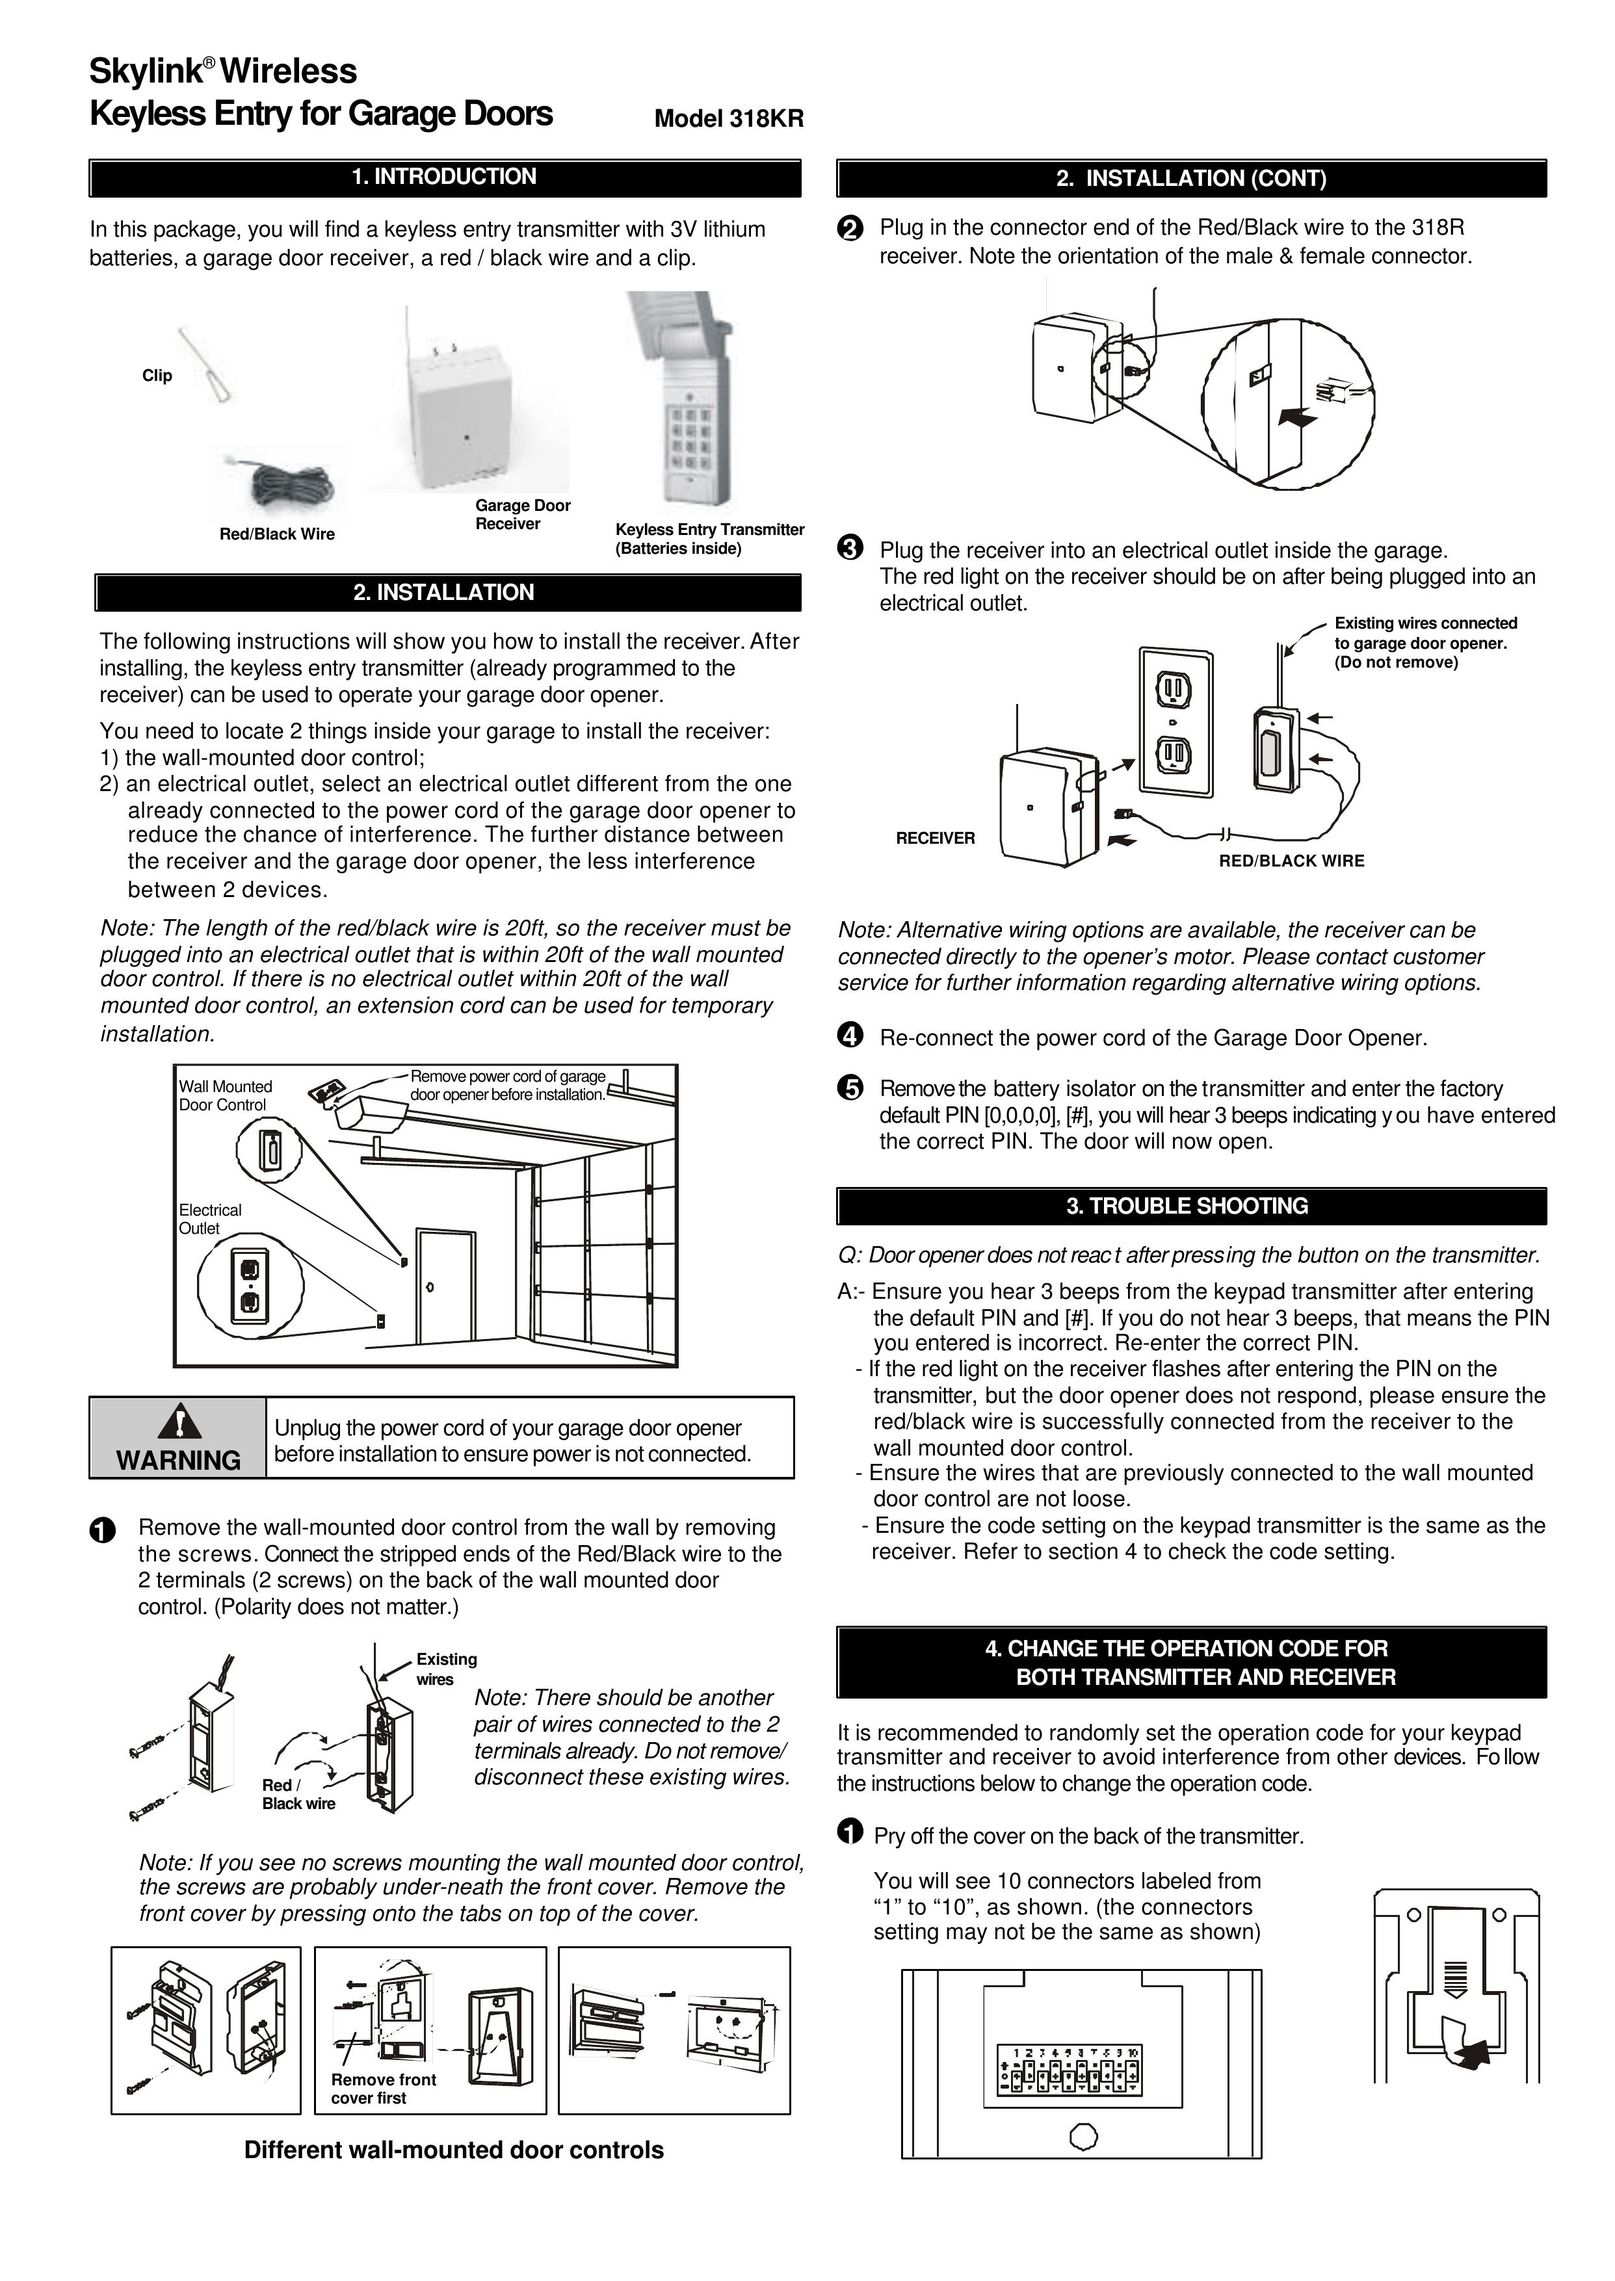 SkyLink 318KR Garage Door Opener User Manual